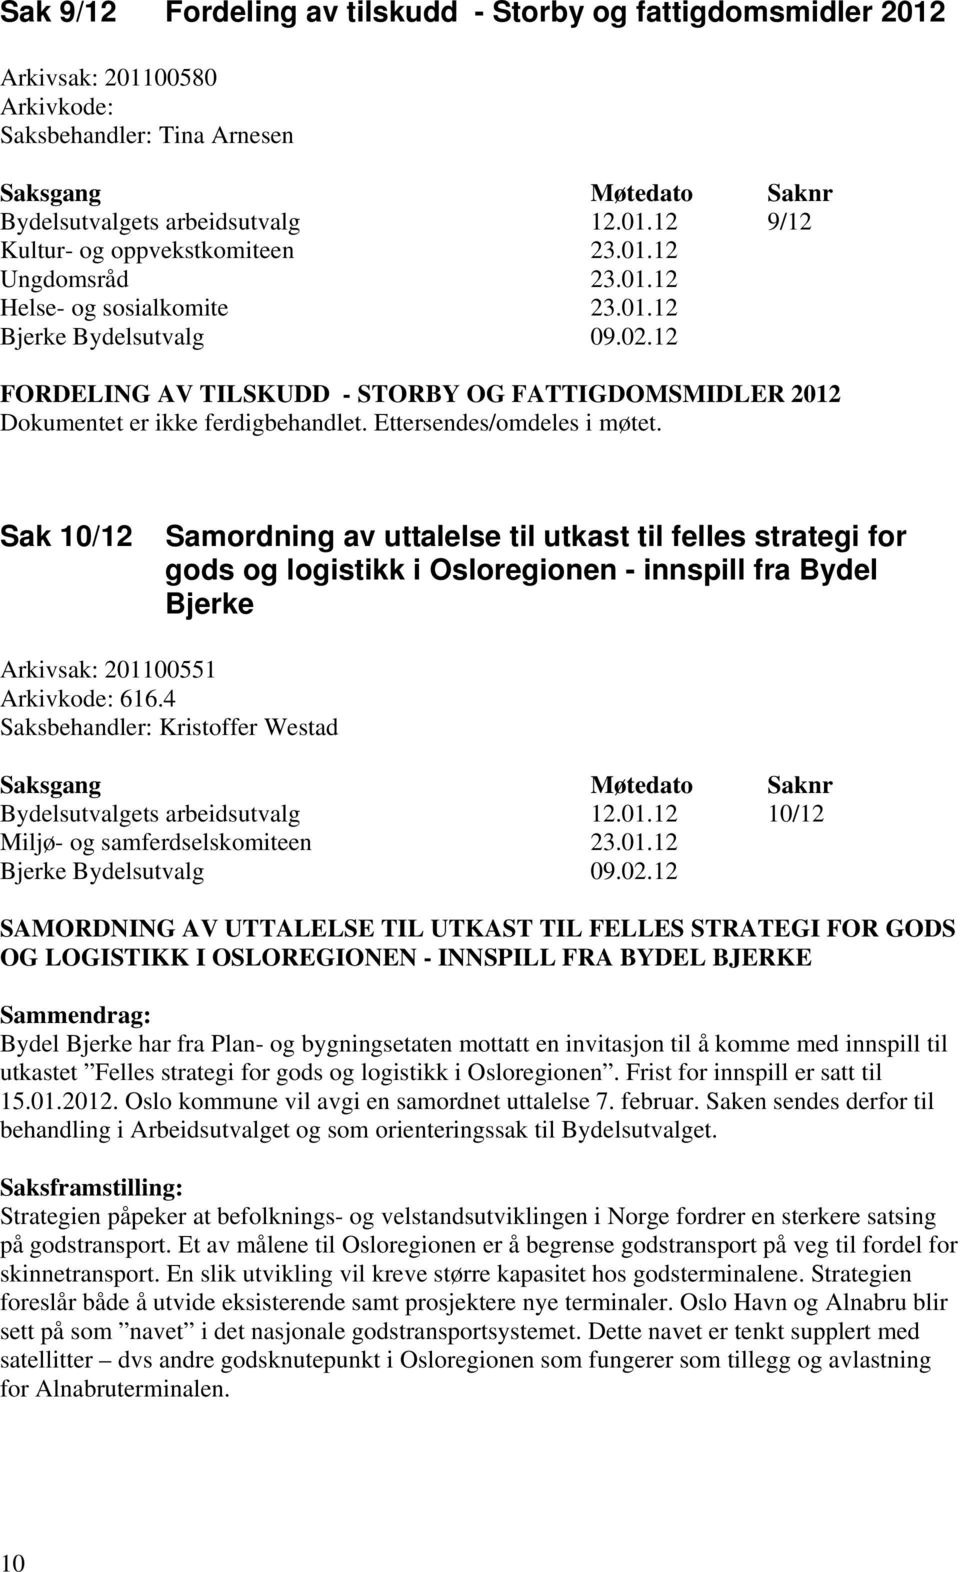 Sak 10/12 Samordning av uttalelse til utkast til felles strategi for gods og logistikk i Osloregionen - innspill fra Bydel Bjerke Arkivsak: 201100551 Arkivkode: 616.